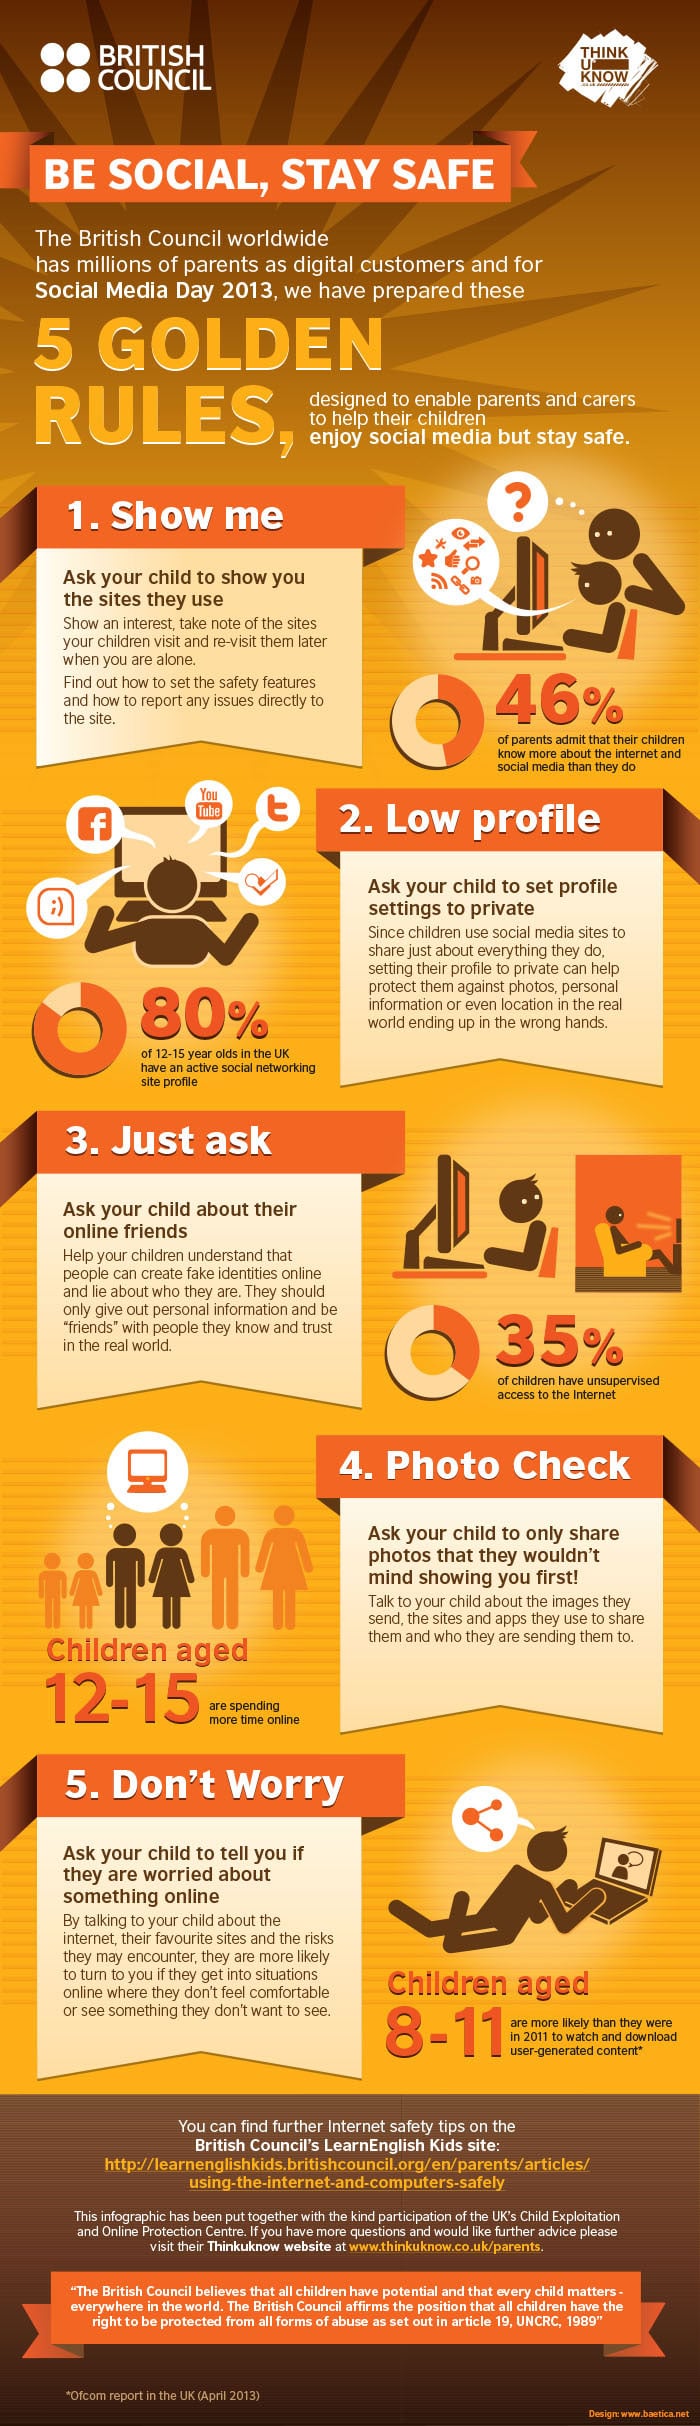 keep-children-safe-social-media